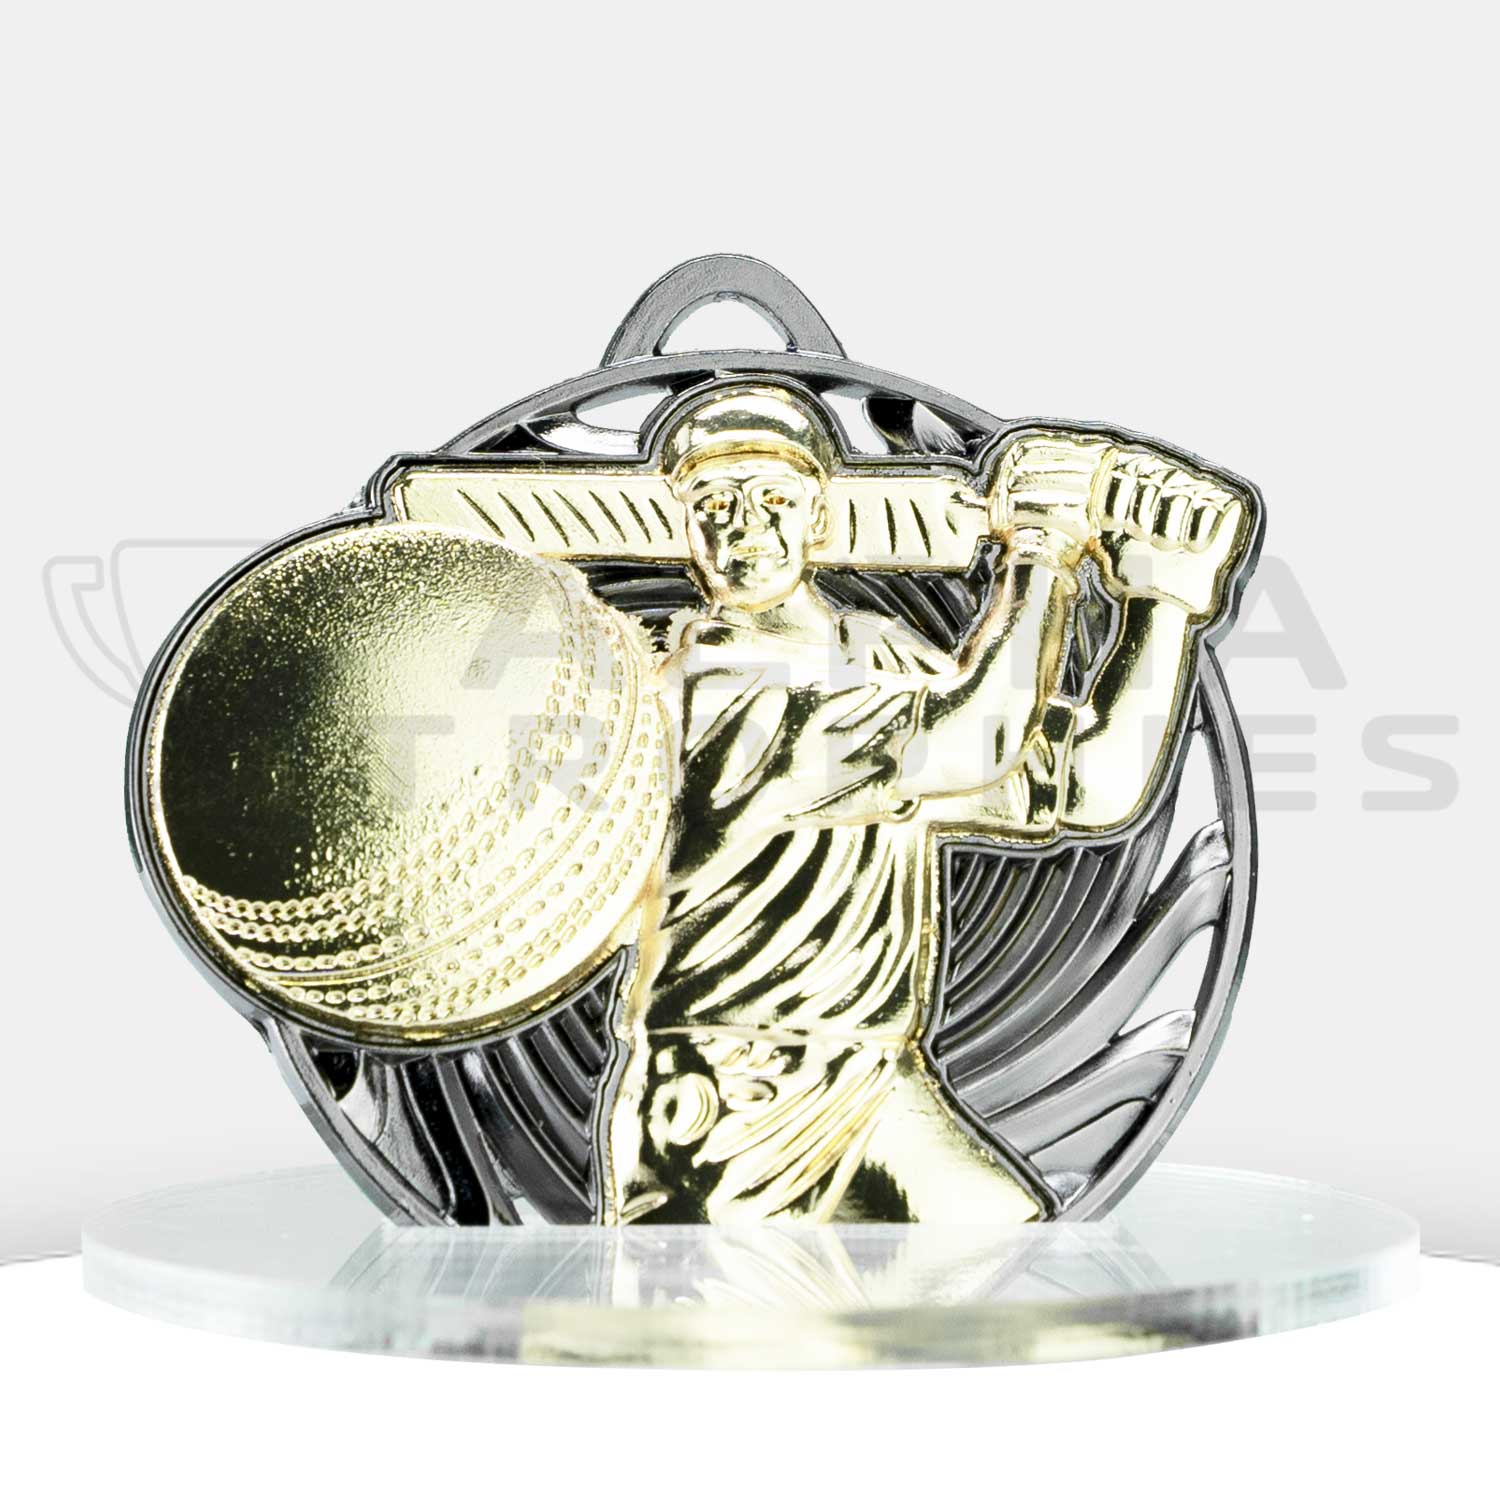 cricket-voretx-medal-gold-front